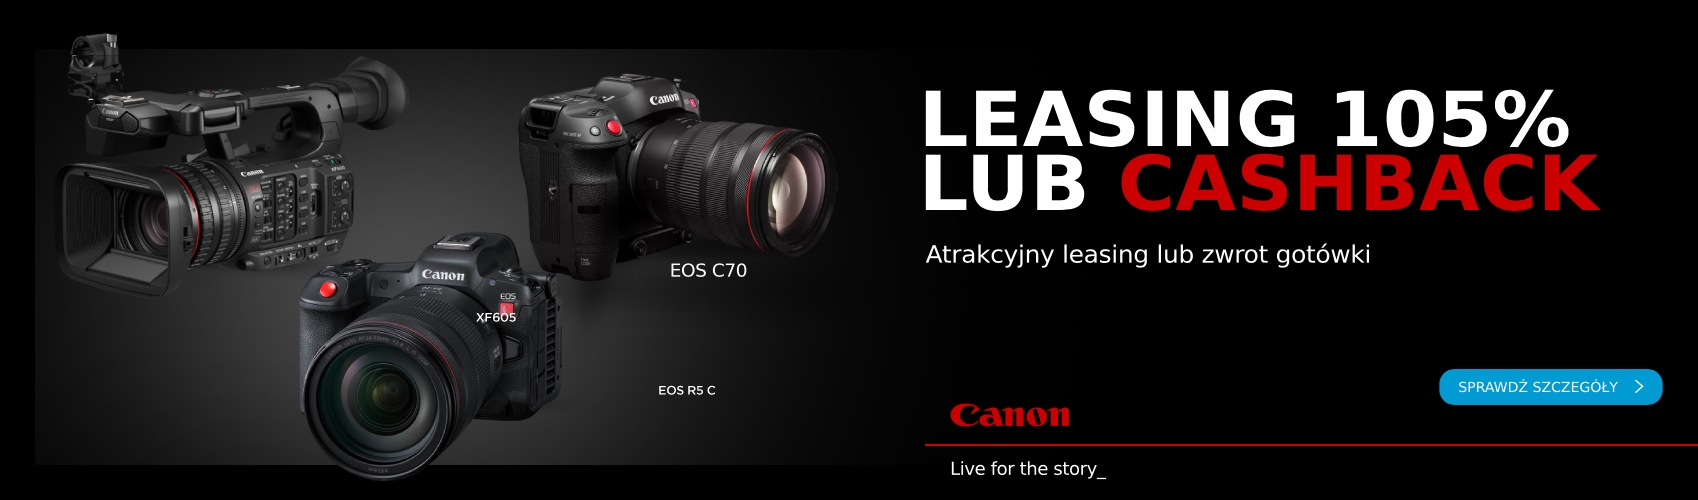 Odbierz leasing 105% lub cashback natychmiastowy na wybrane produkty Canon